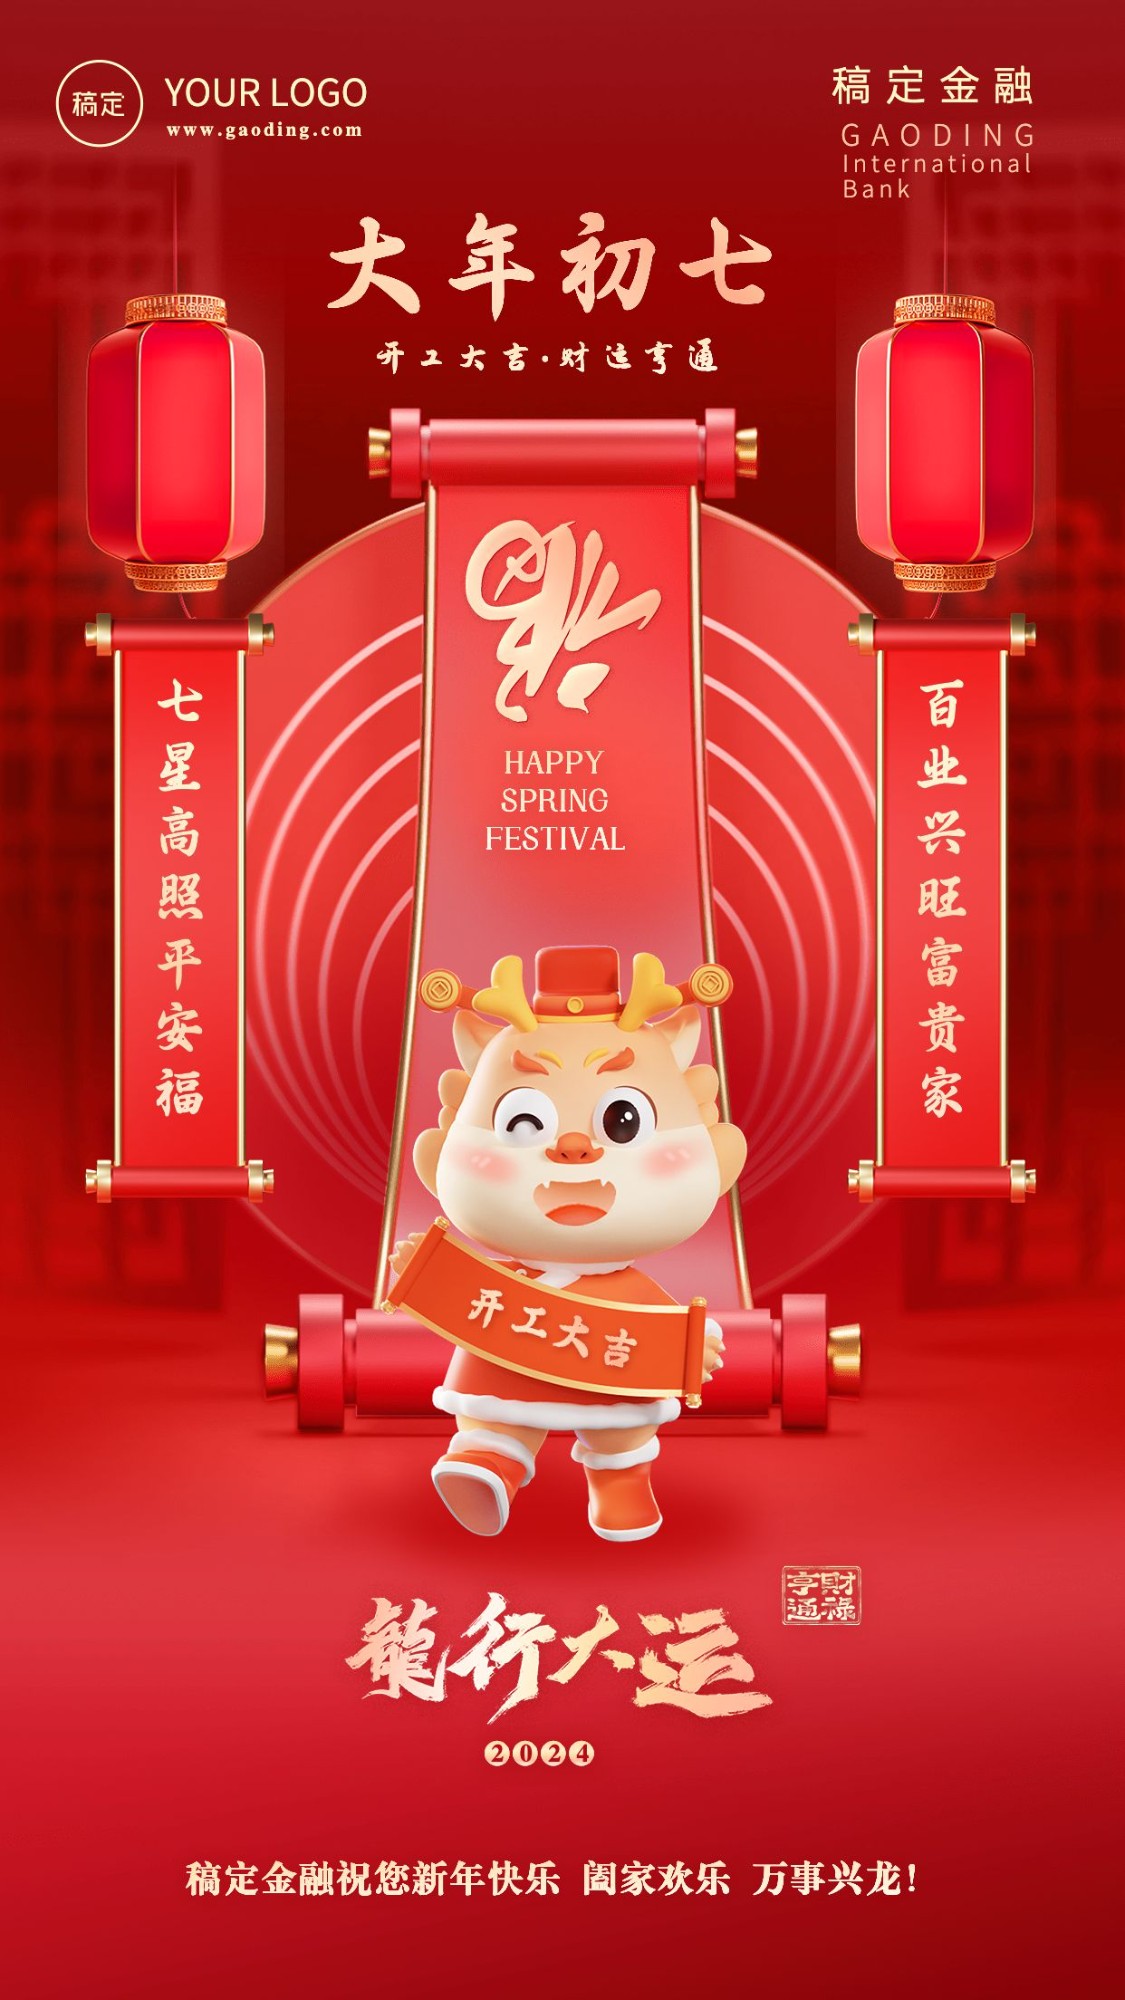 春节龙年正月初七金融保险节日祝福喜庆3D系列手机海报